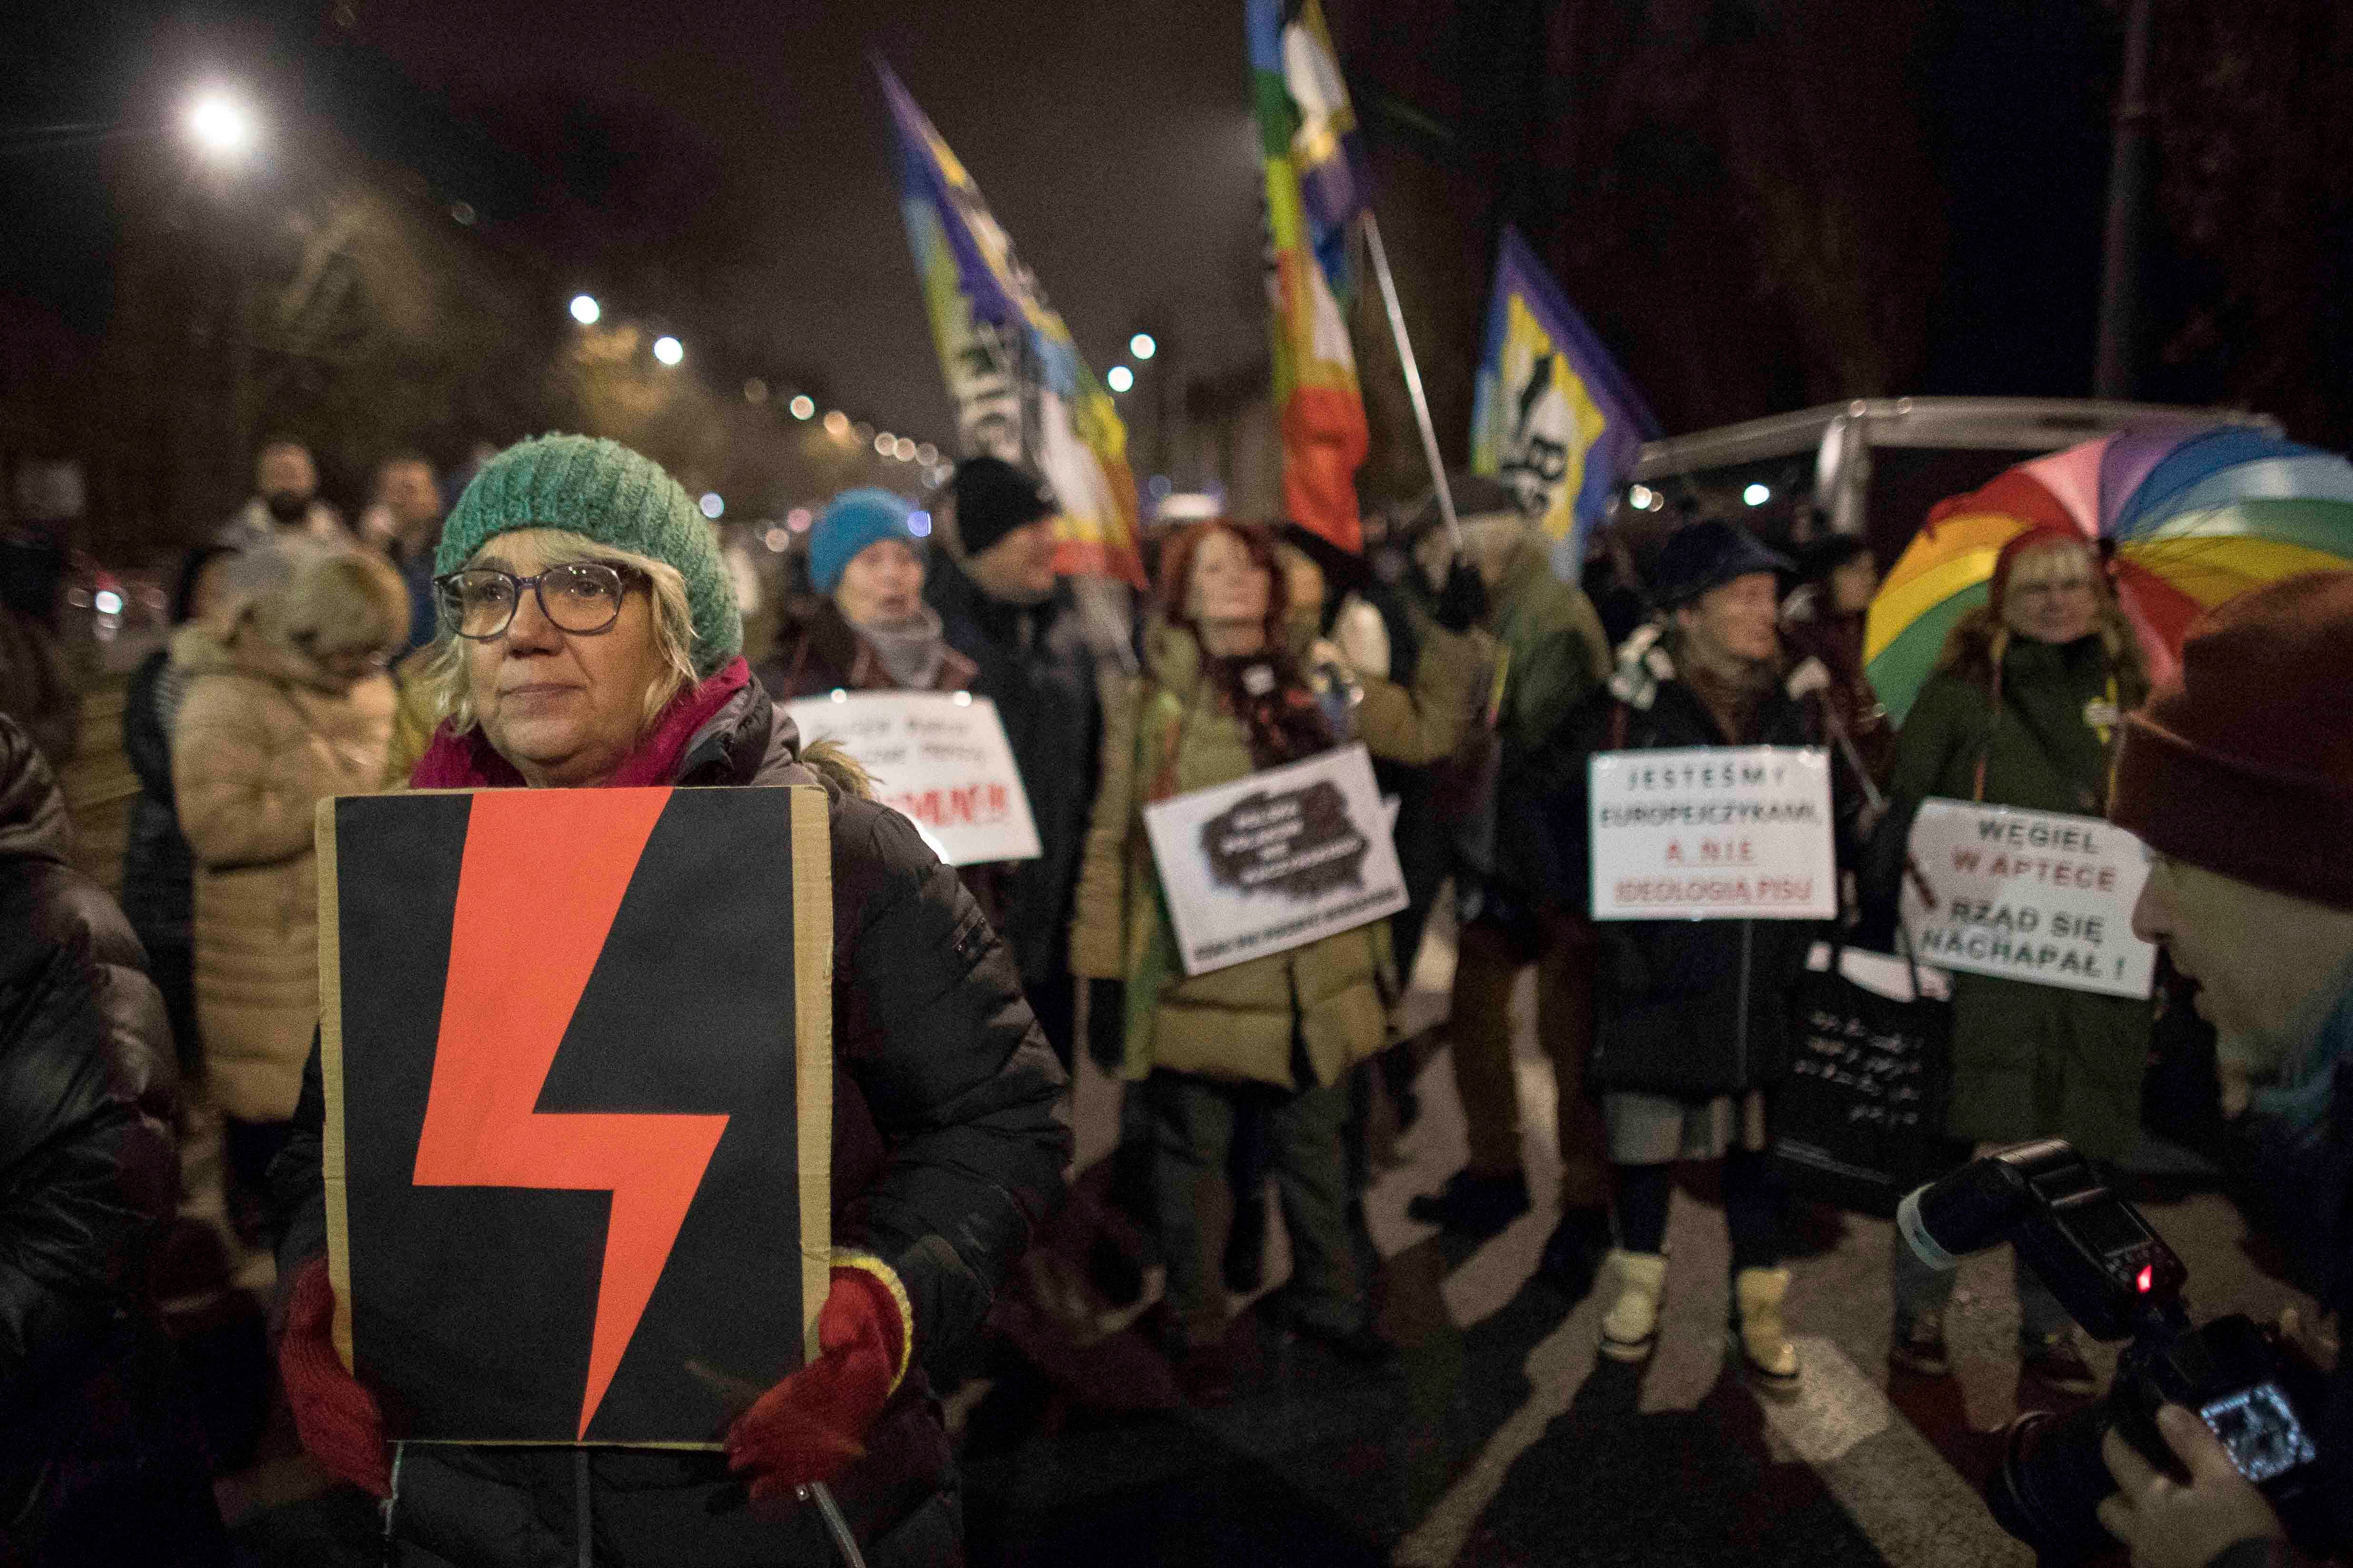 Une manifestante tenait une pancarte montrant un éclair rouge, devenu un symbole des droits des femmes en Pologne, lors d’un rassemblement tenu à Varsovie pour protester contre l'érosion de ces droits dans ce pays, le 28 novembre 2022.